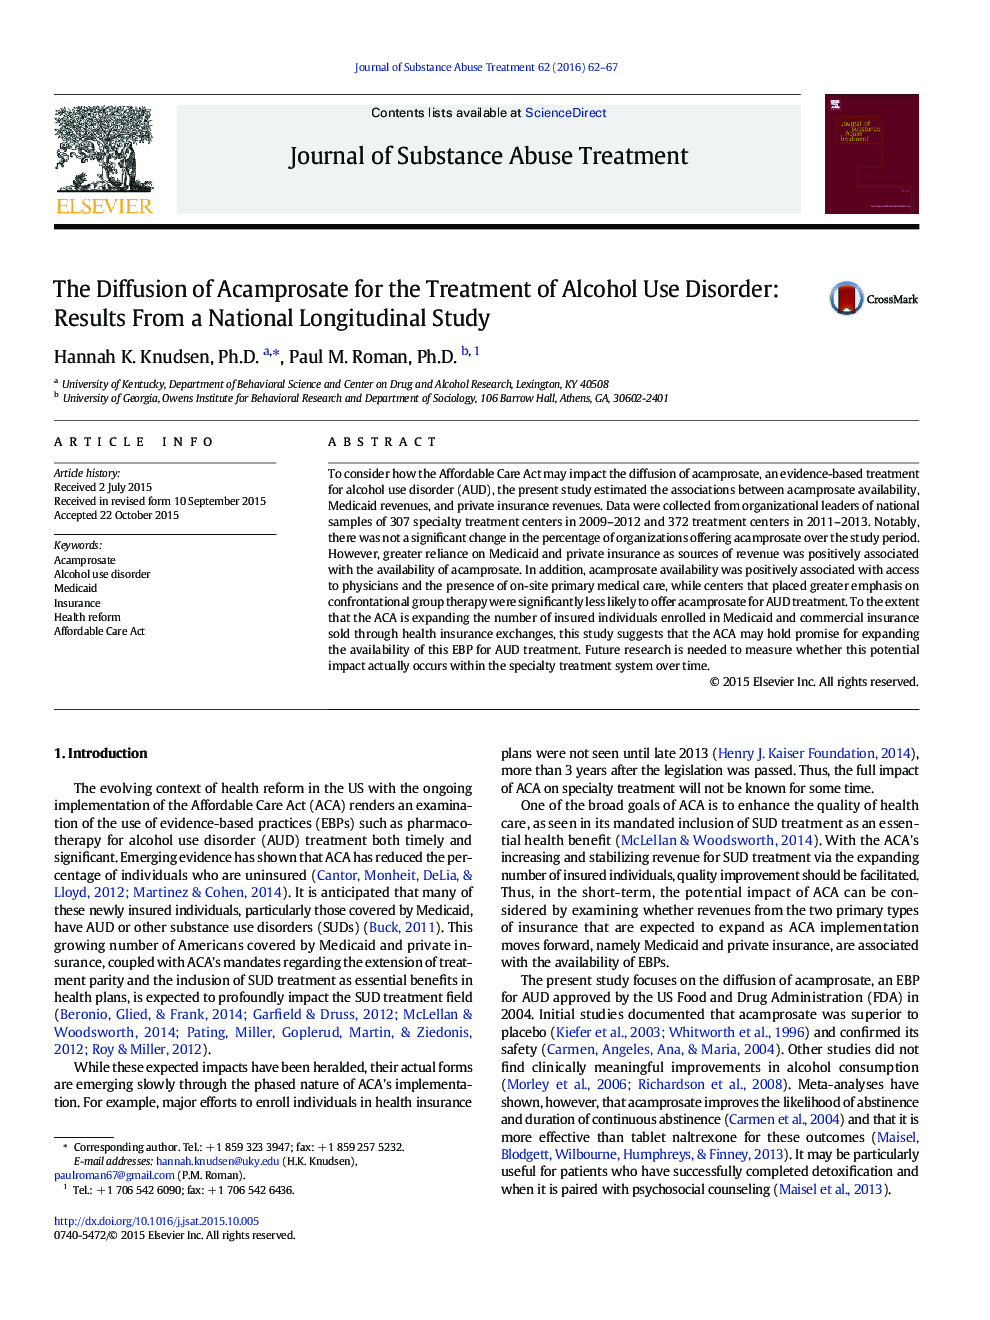 انتشار داروی Acamprosate برای درمان اختلال مصرف الکل: نتایج یک مطالعه ملی طولی